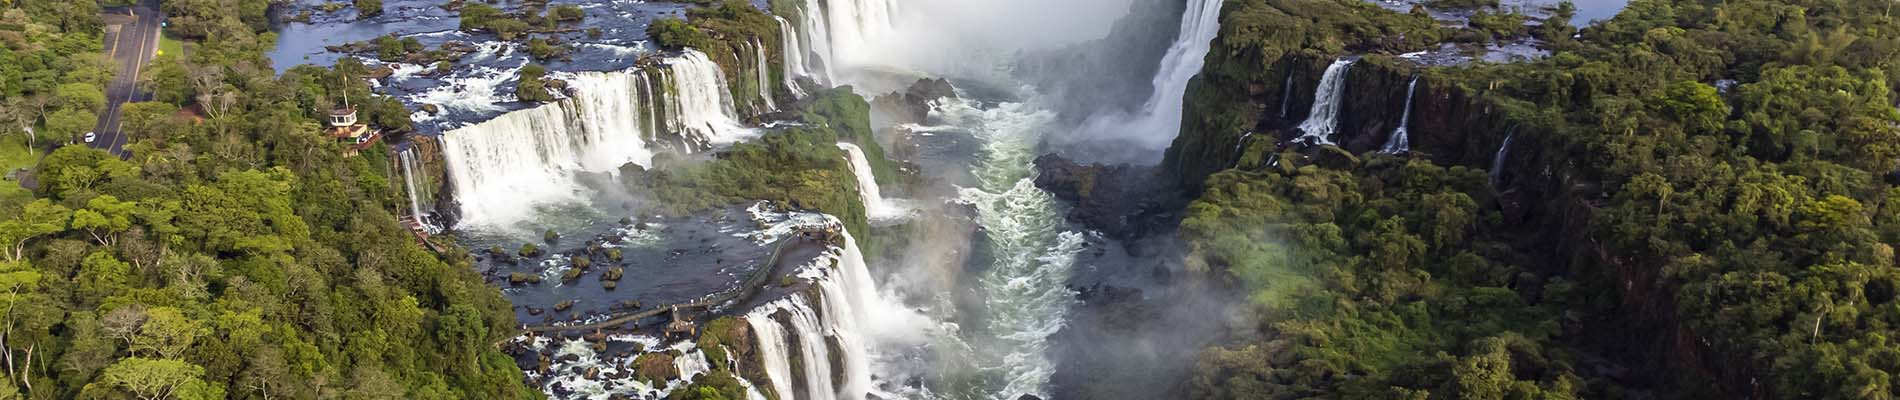 Cataratas do Iguaçu em vista superior.